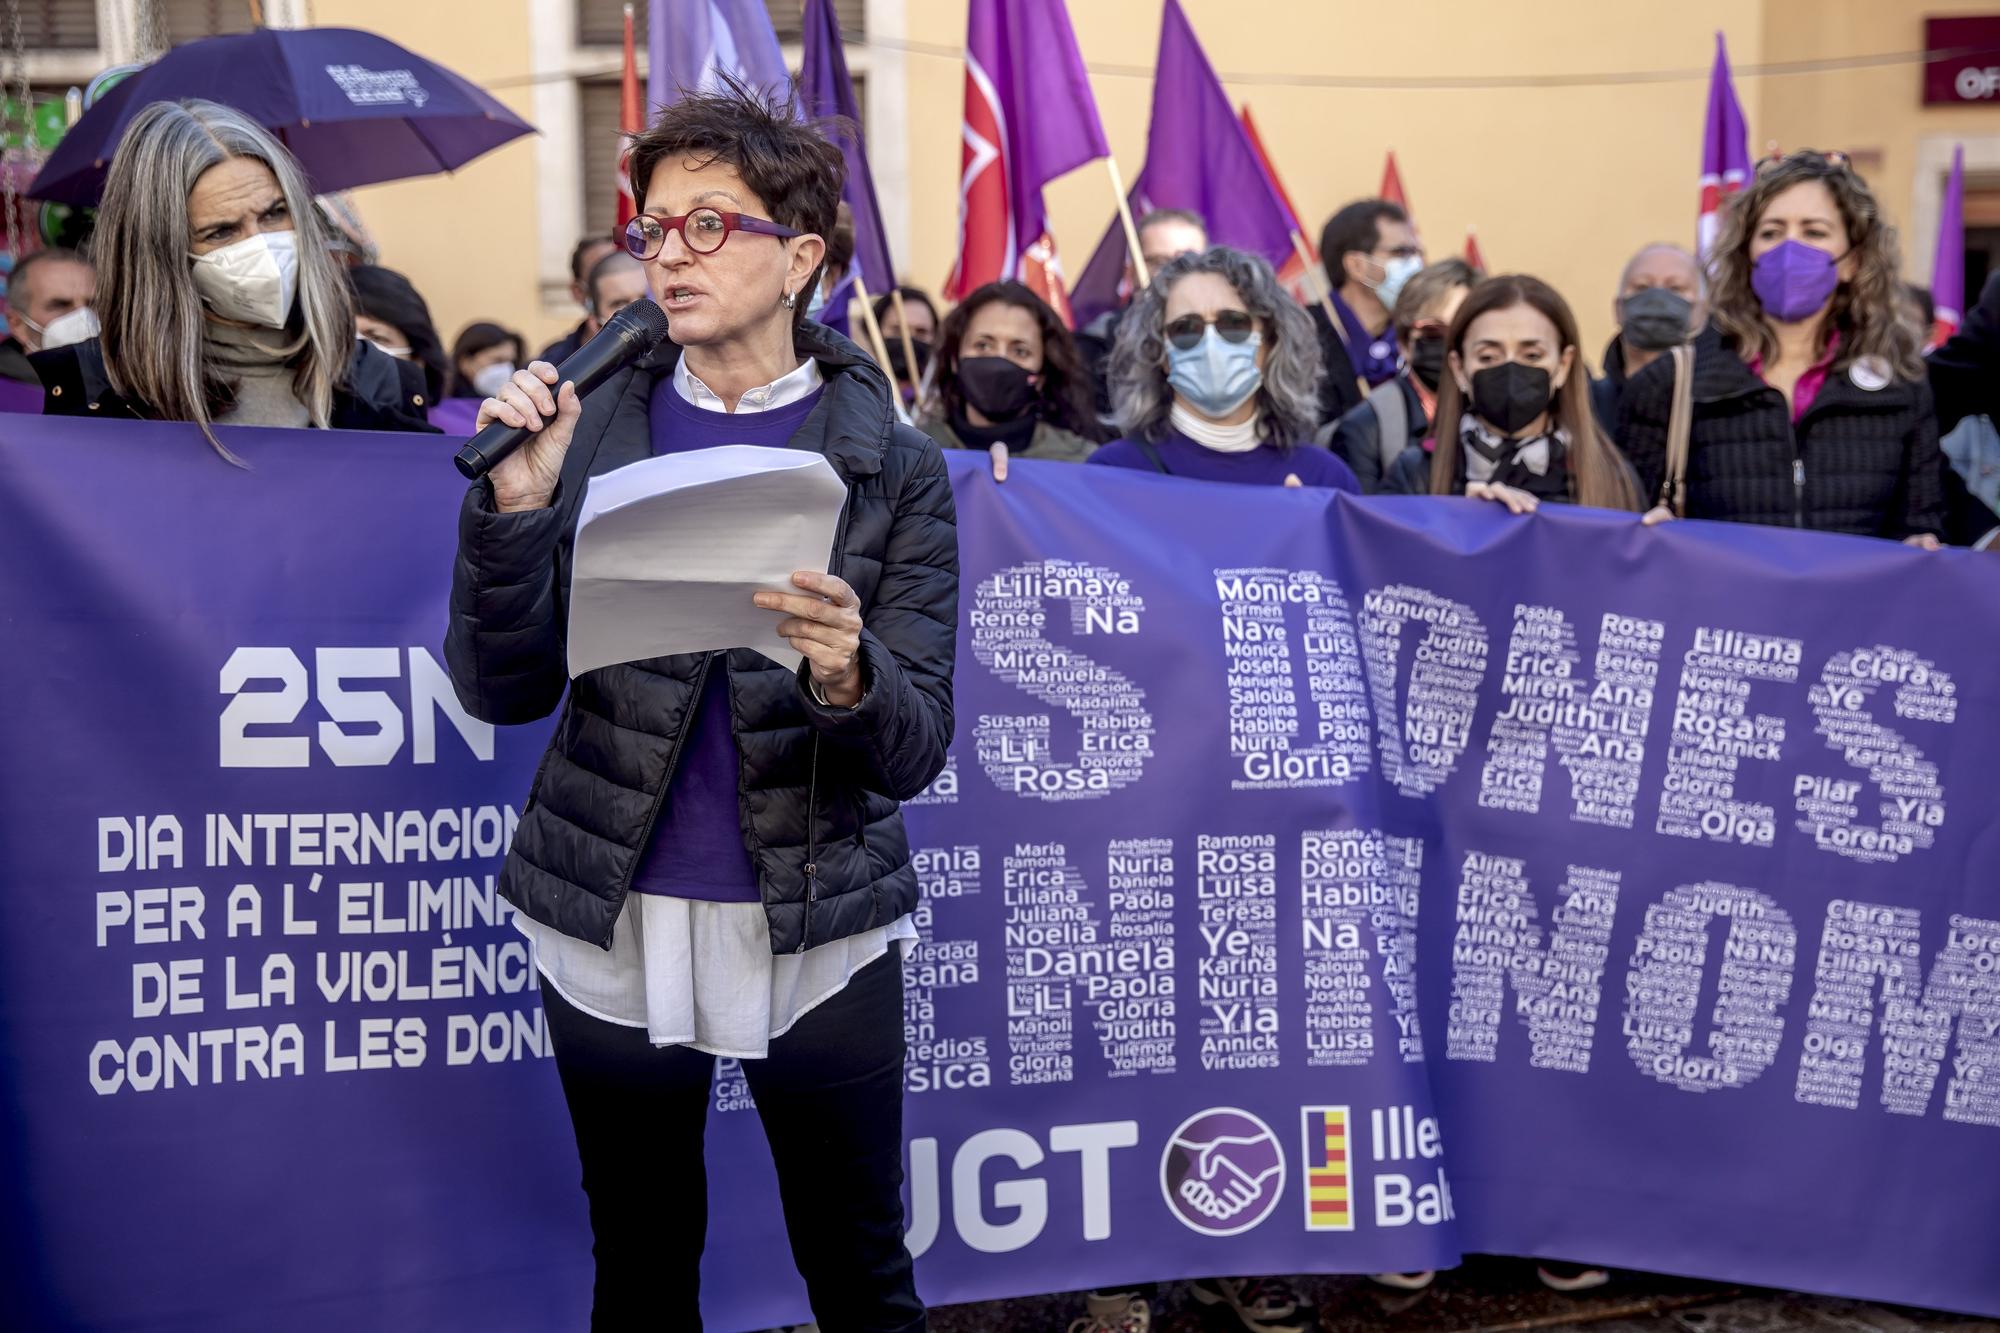 Manifestación del 25-N en Mallorca: Concentración de sindicatos en la Plaza del Olivar